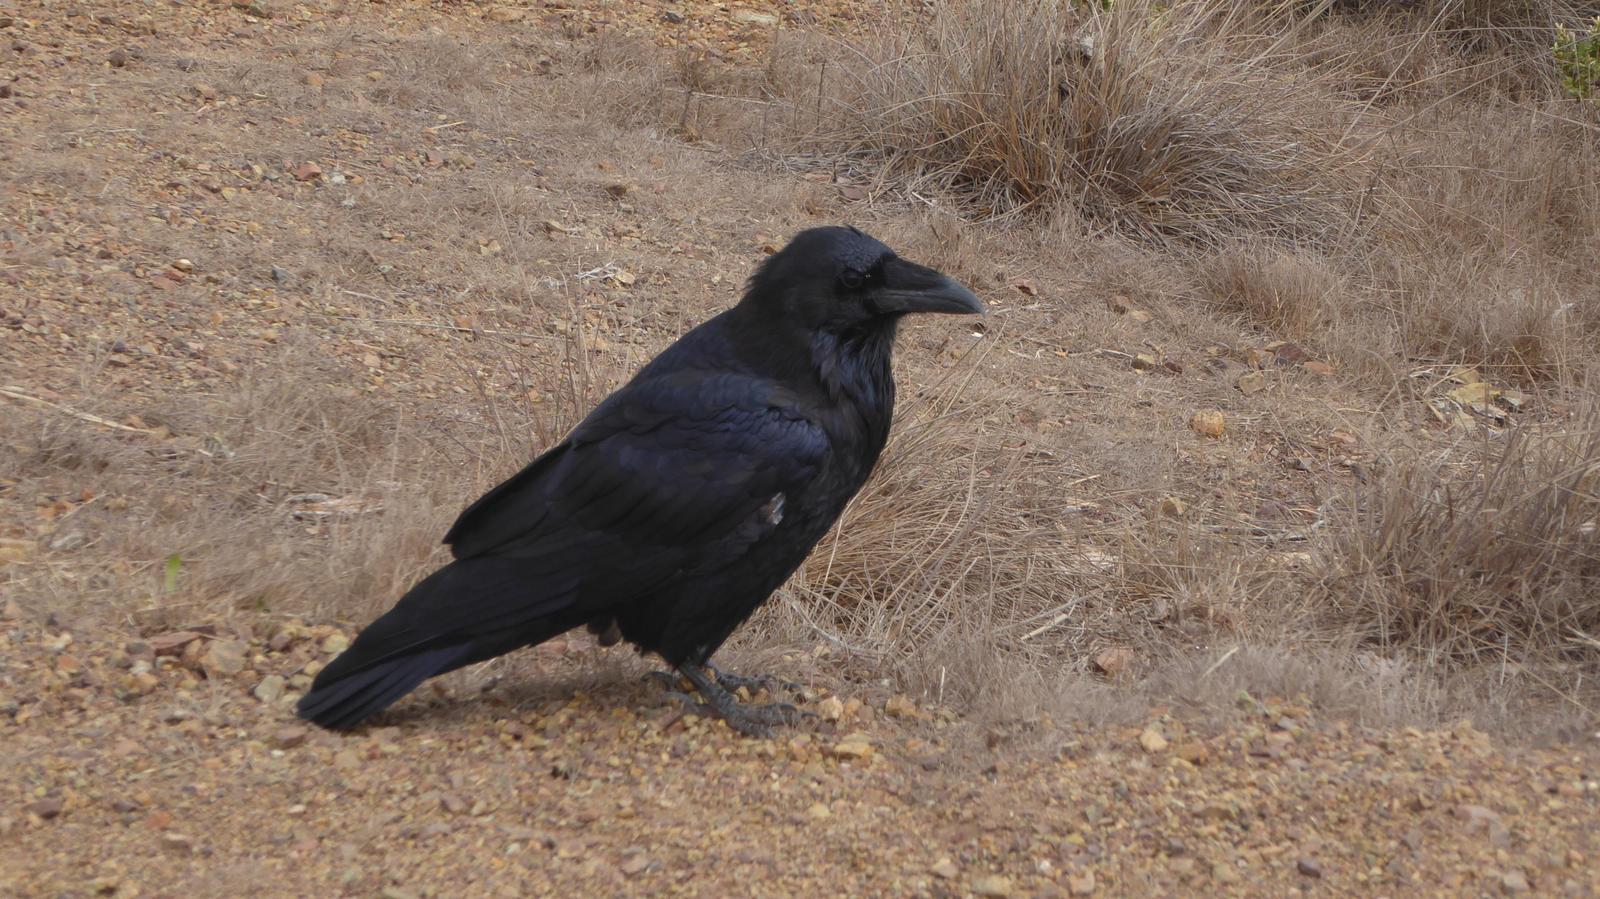 Common Raven Photo by Daliel Leite